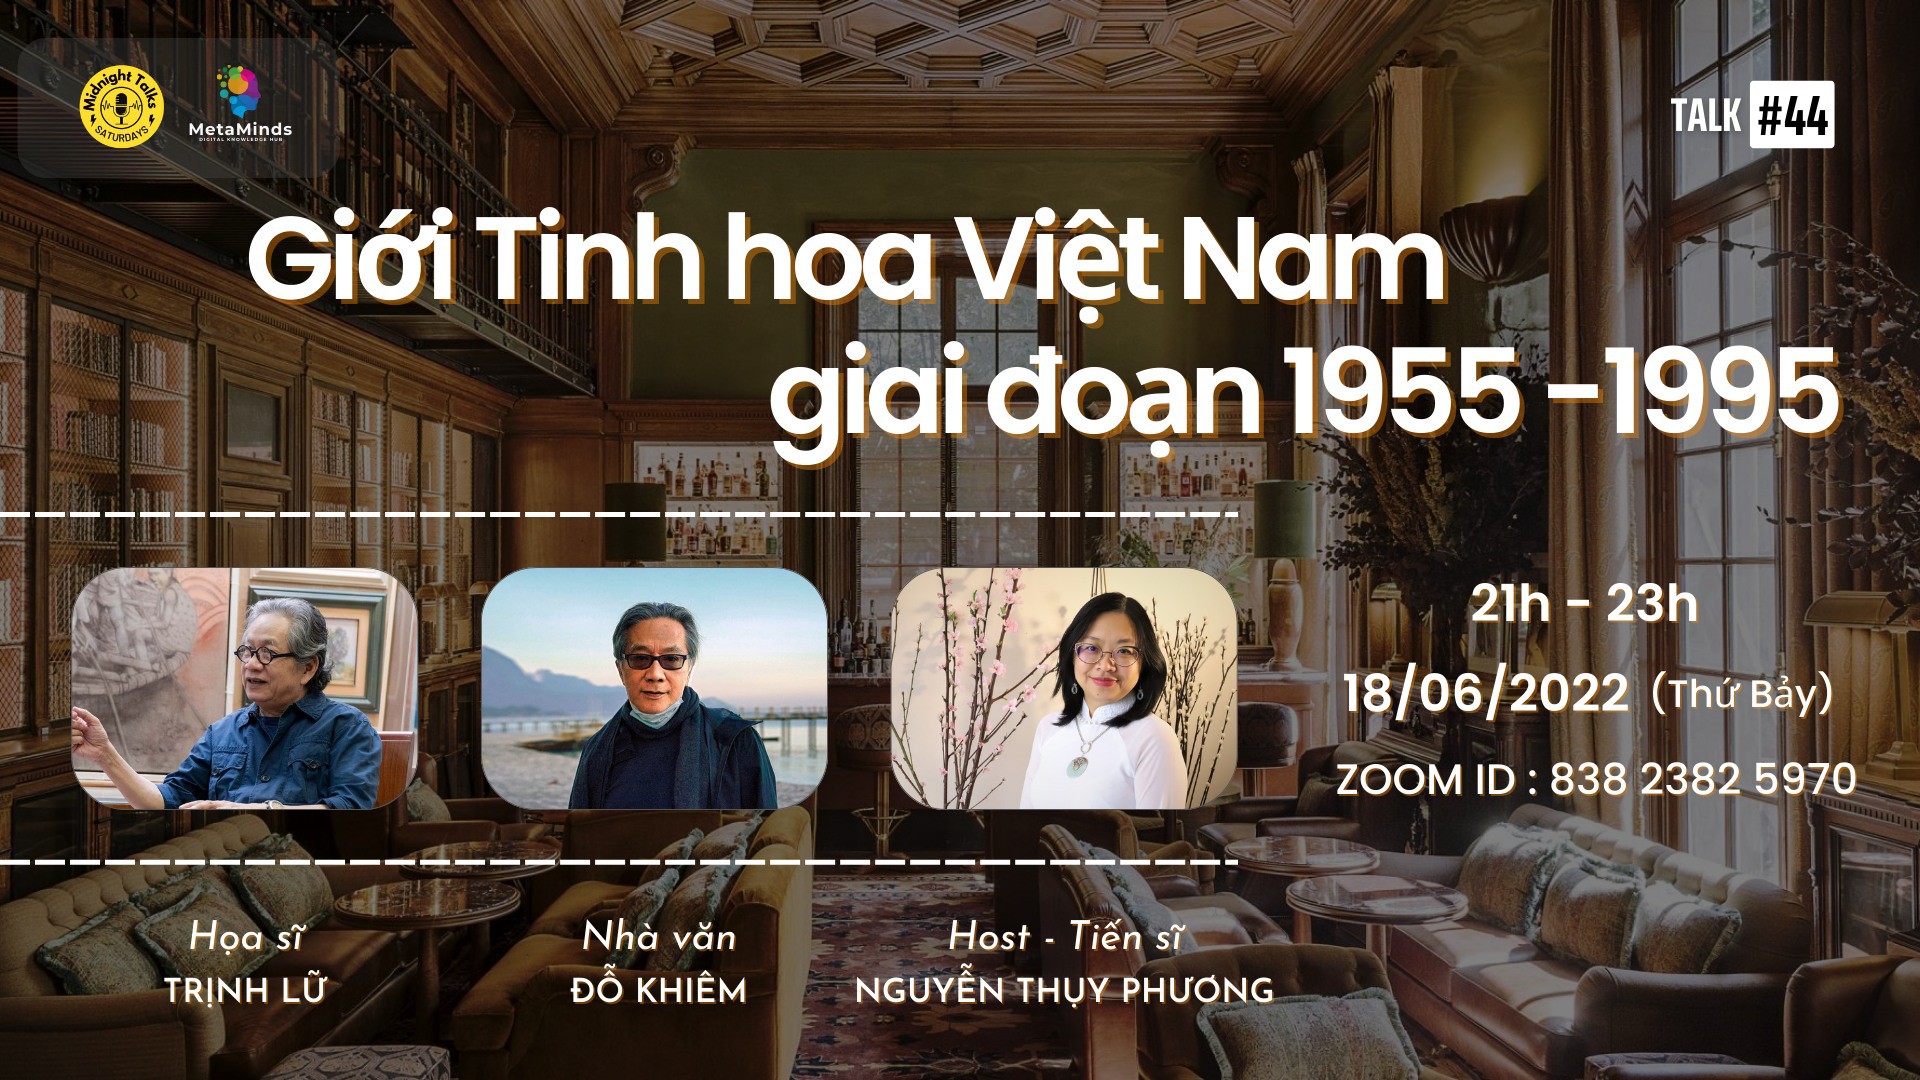 Midnight Talks Số 44 - Giới tinh hoa Việt Nam giai đoạn 1955 - 1995